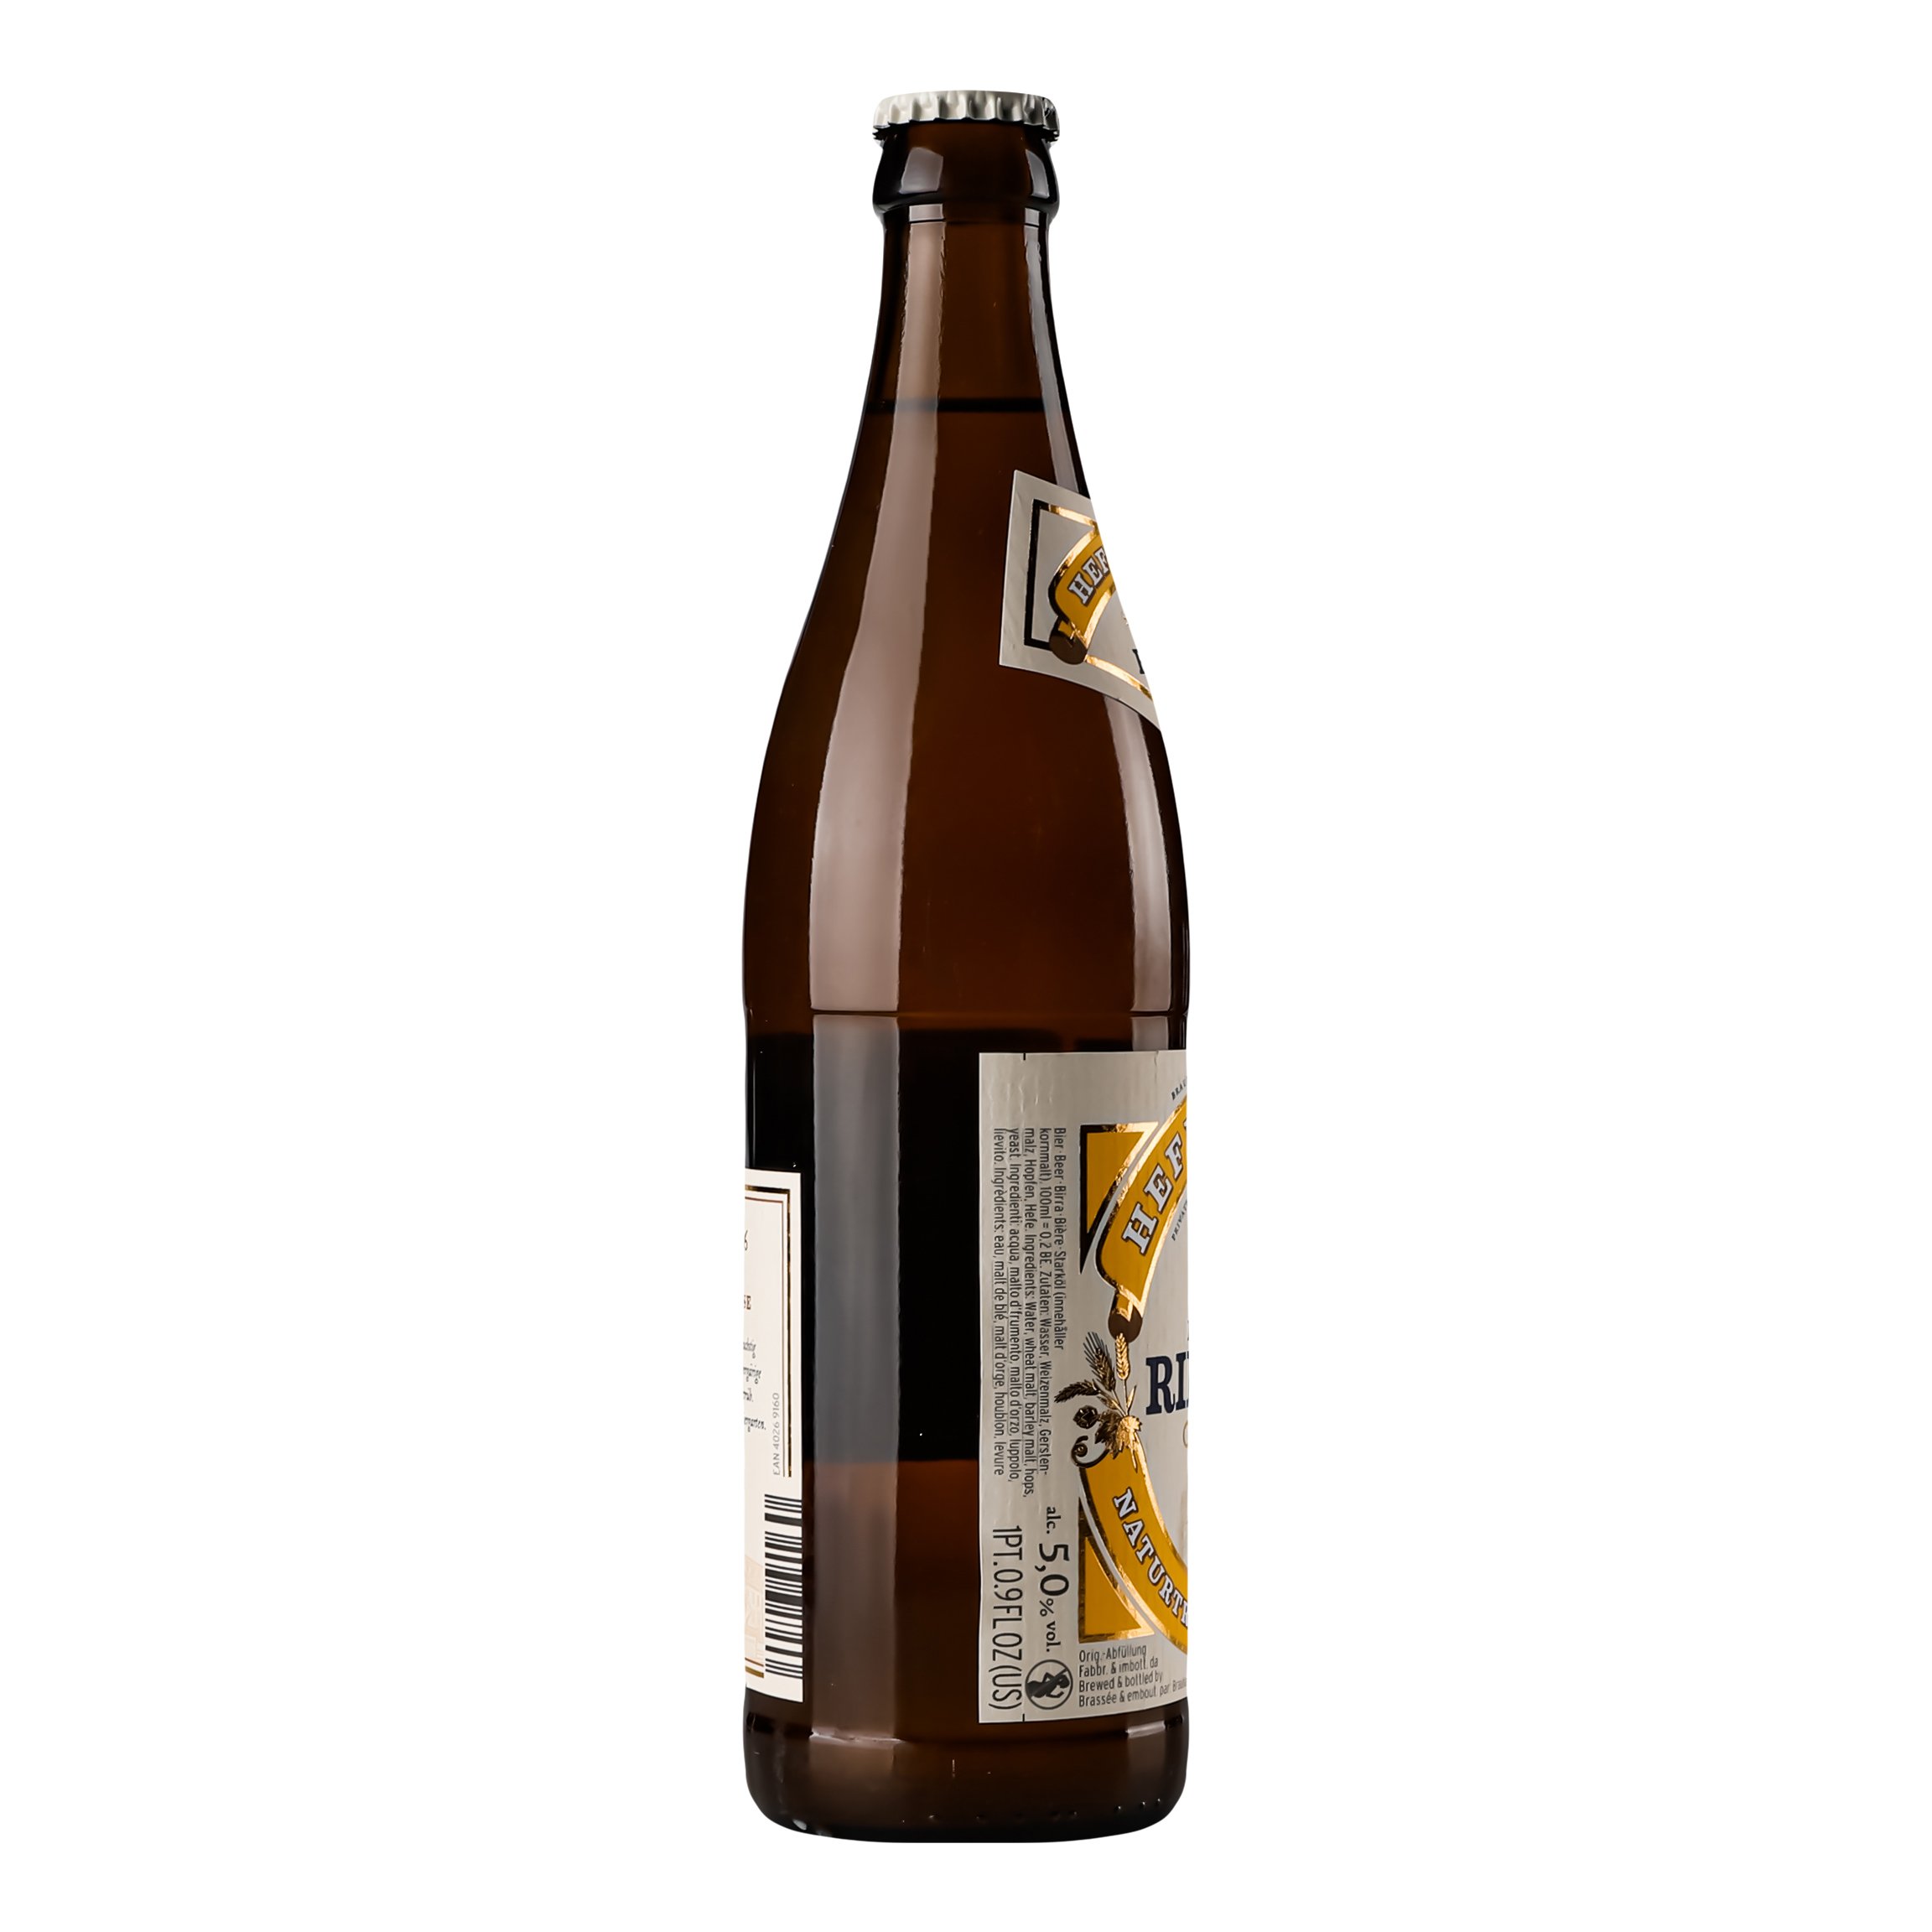 Пиво Riegele Hefe Weisse светлое нефильтрованное, 5%, 0,5 л (749207) - фото 3